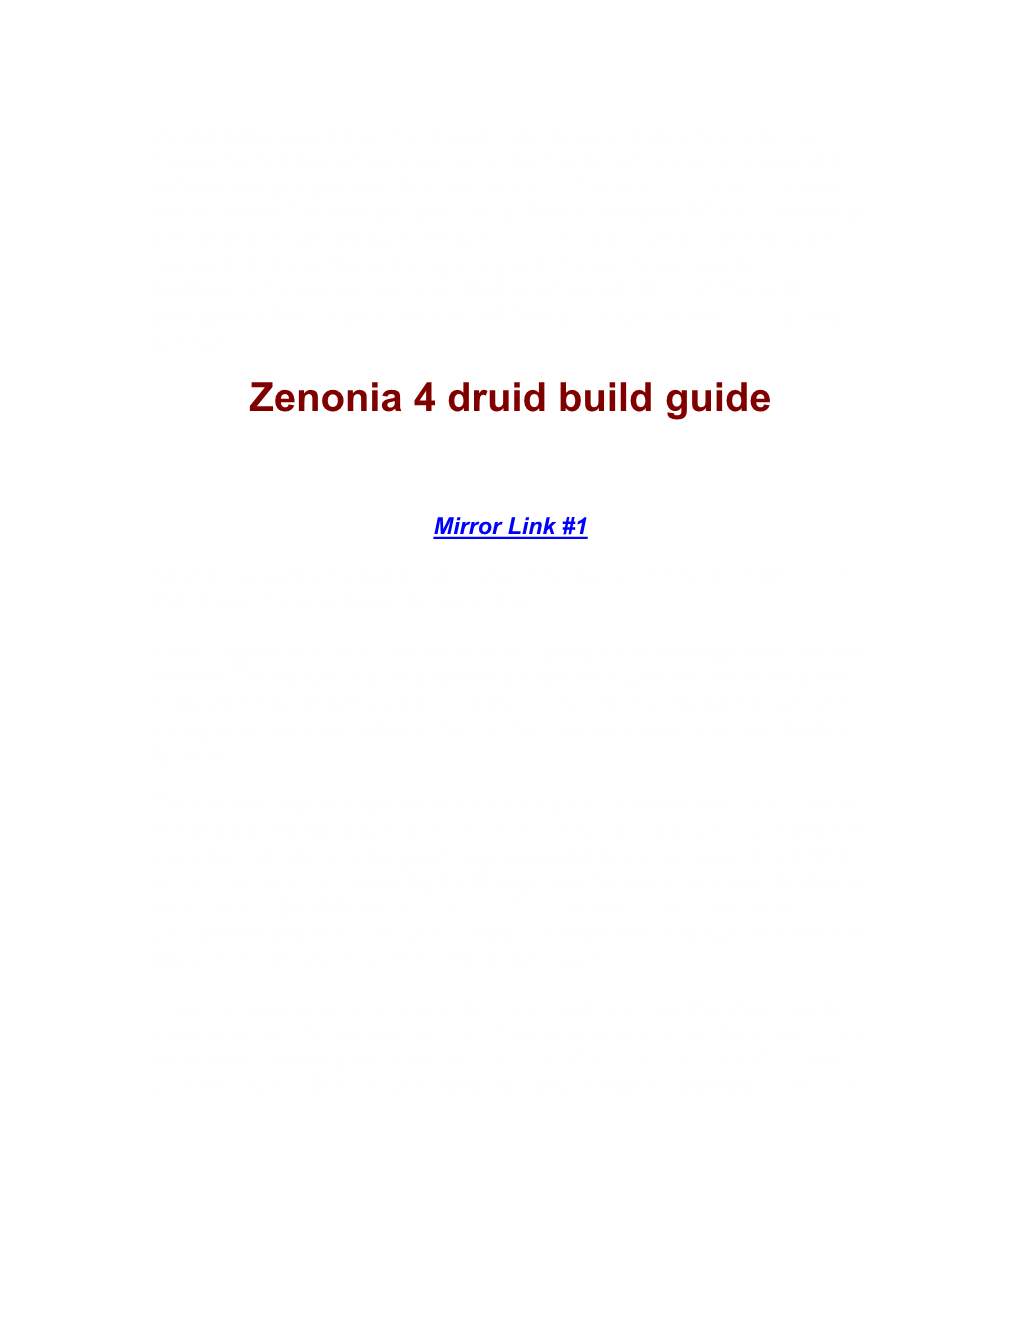 Zenonia 4 Druid Build Guide